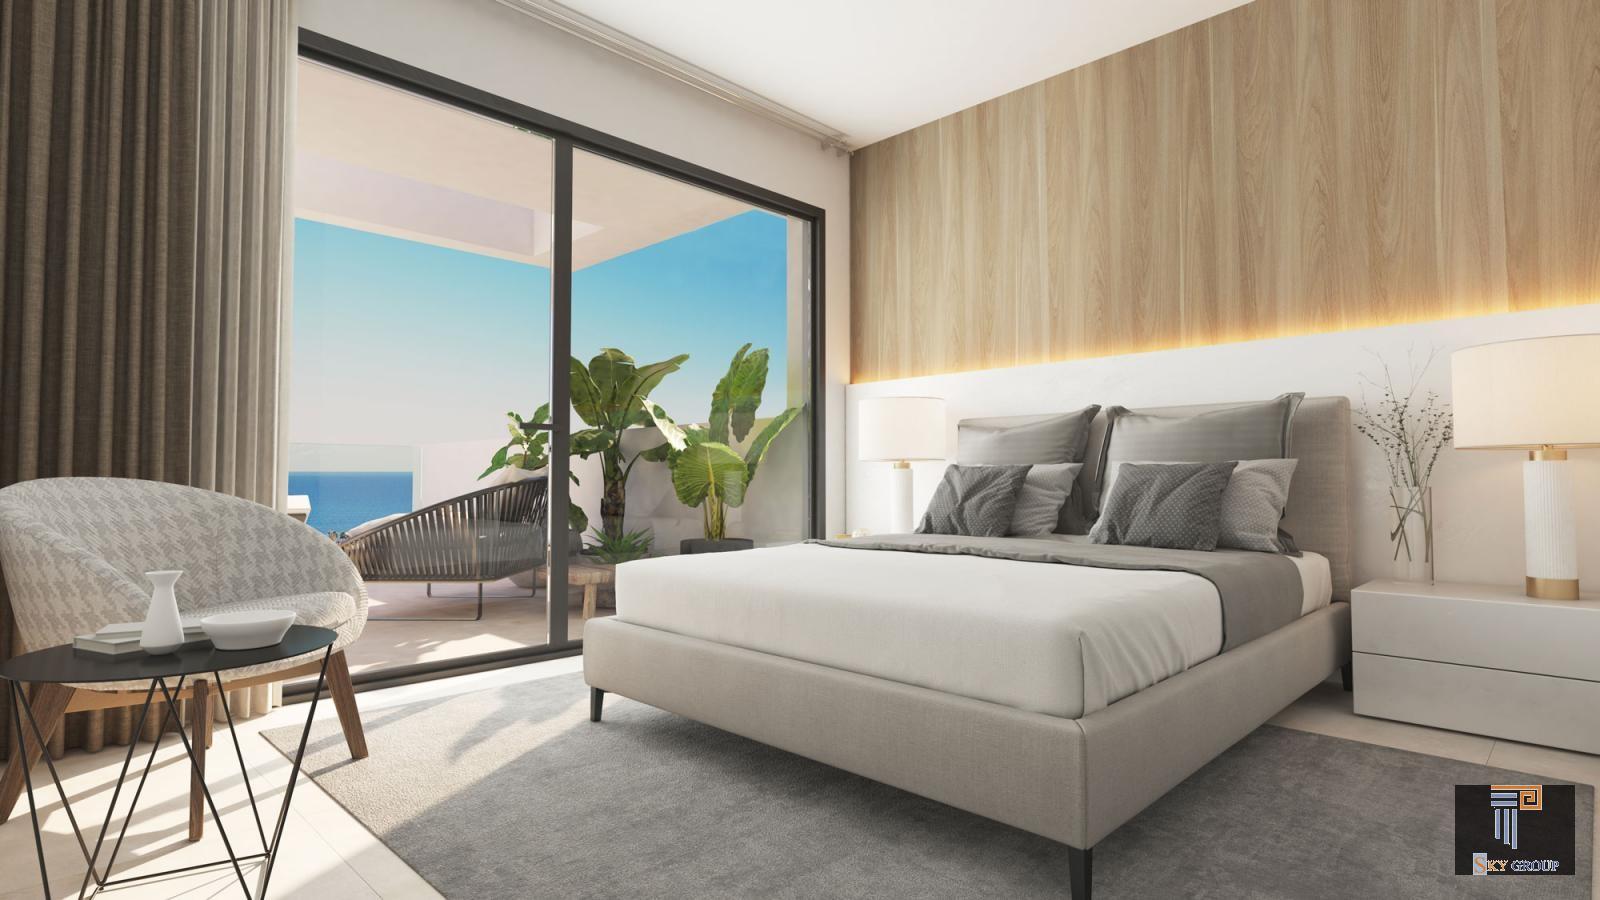 Luxuriöse Apartment zum verkauf in Manilva Costa (Manilva), 225.000 €